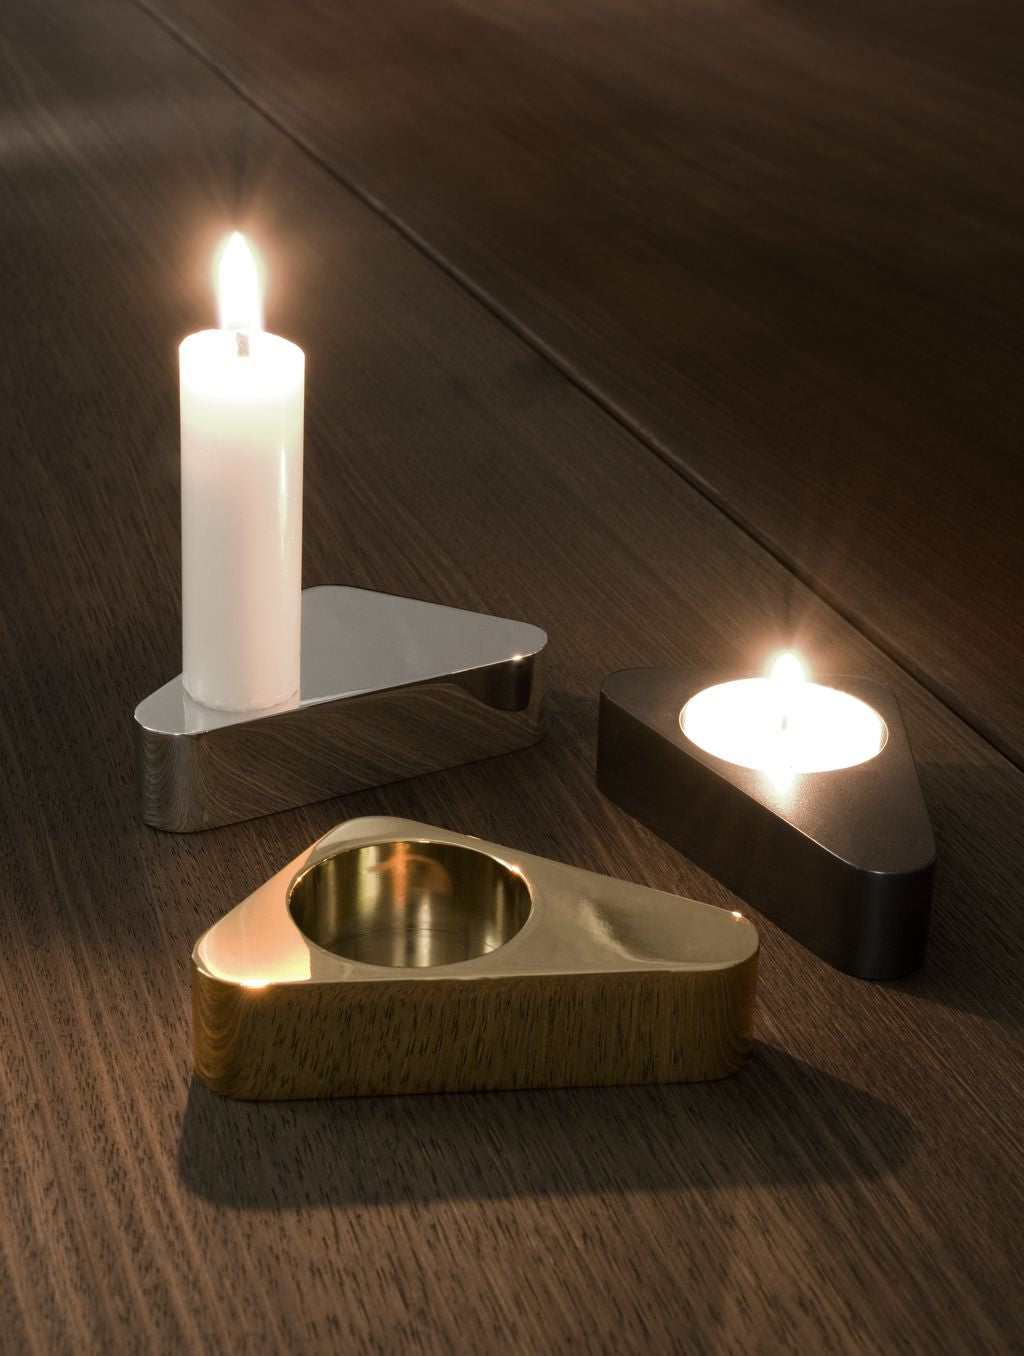 Design novoform Flip Candlestick, oro luccicante